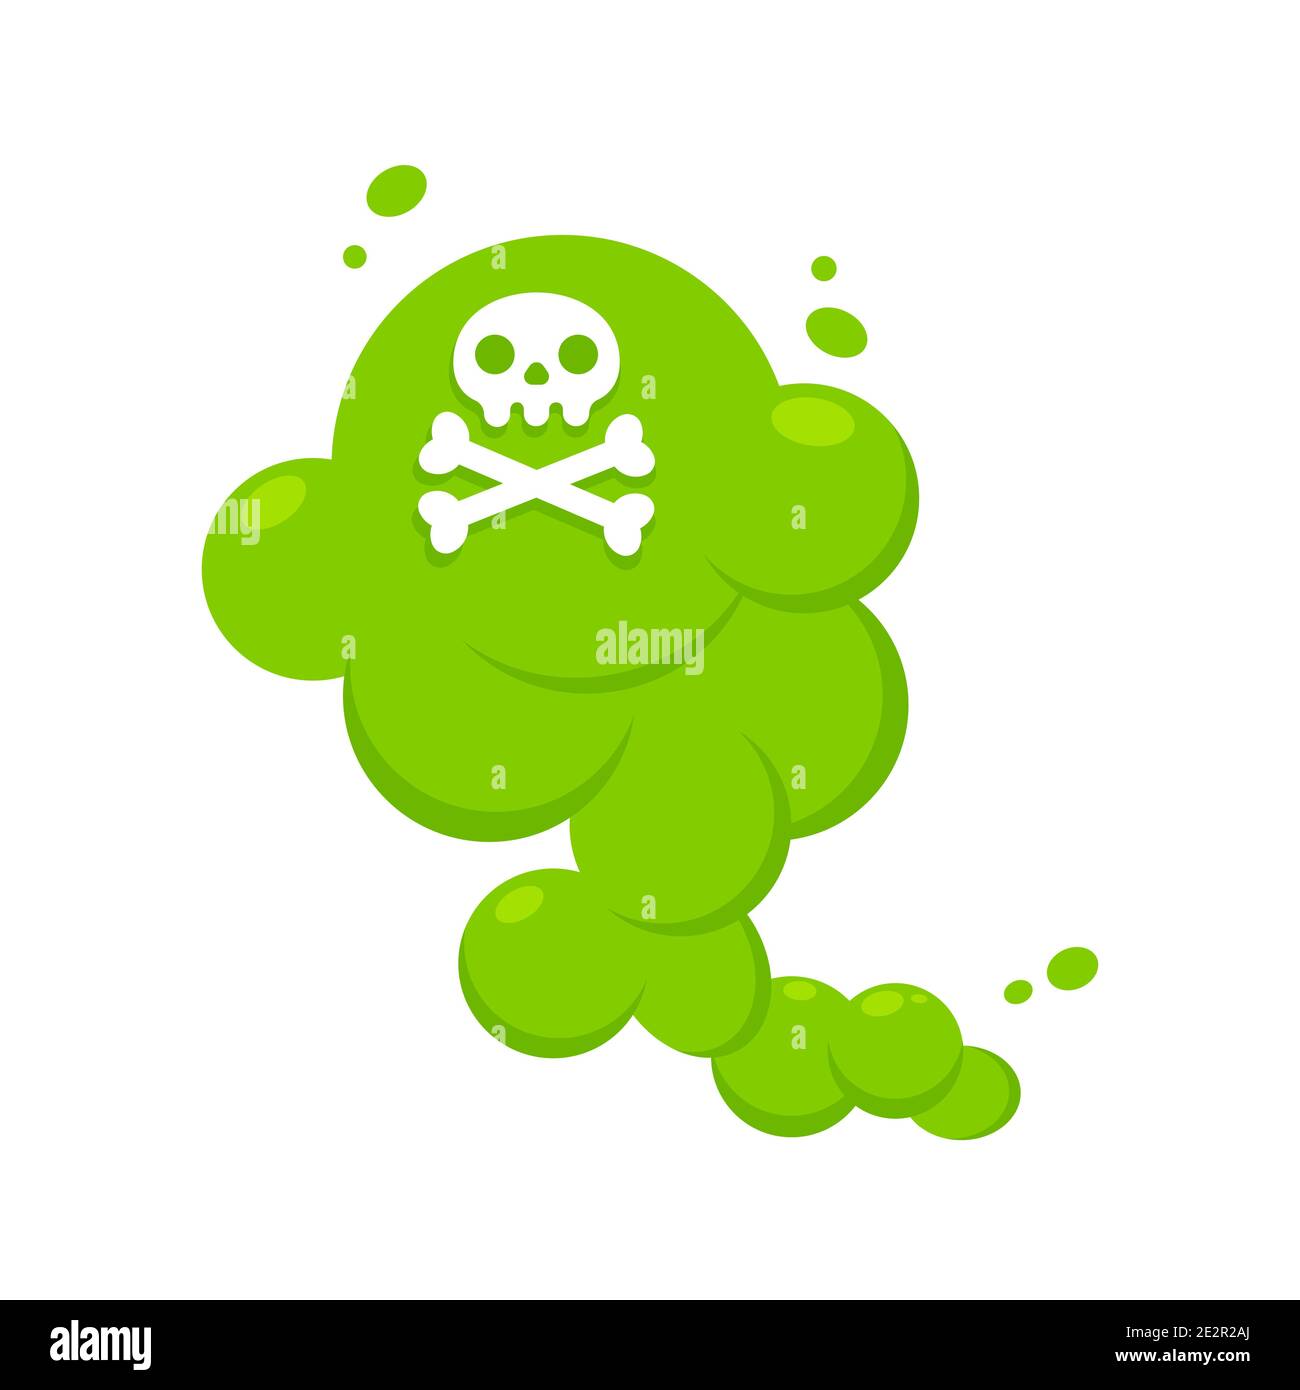 Dibujo de dibujos animados verdes de la nube de estilo plano ilustración vectorial con cráneo de crossbone. Mal olor o olor tóxico dibujos animados humo nube aislada en Ilustración del Vector